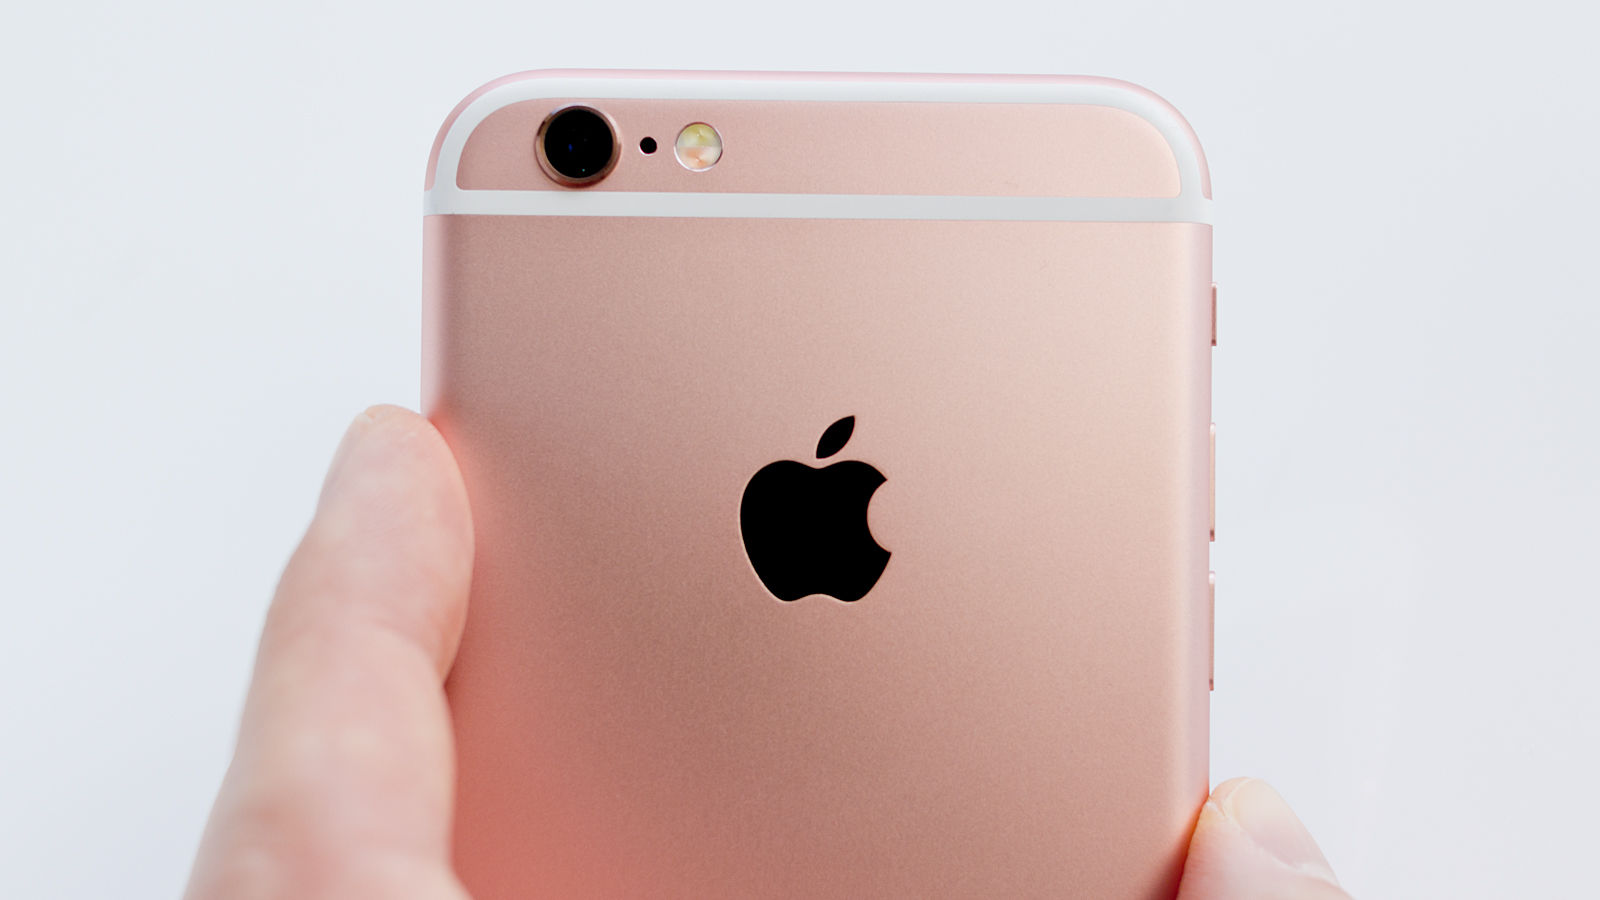 ให้มันเป็นสีชมพู! Apple เตรียมเปิดตัว iPhone 5se, iPad และ MacBook สี Rose Gold